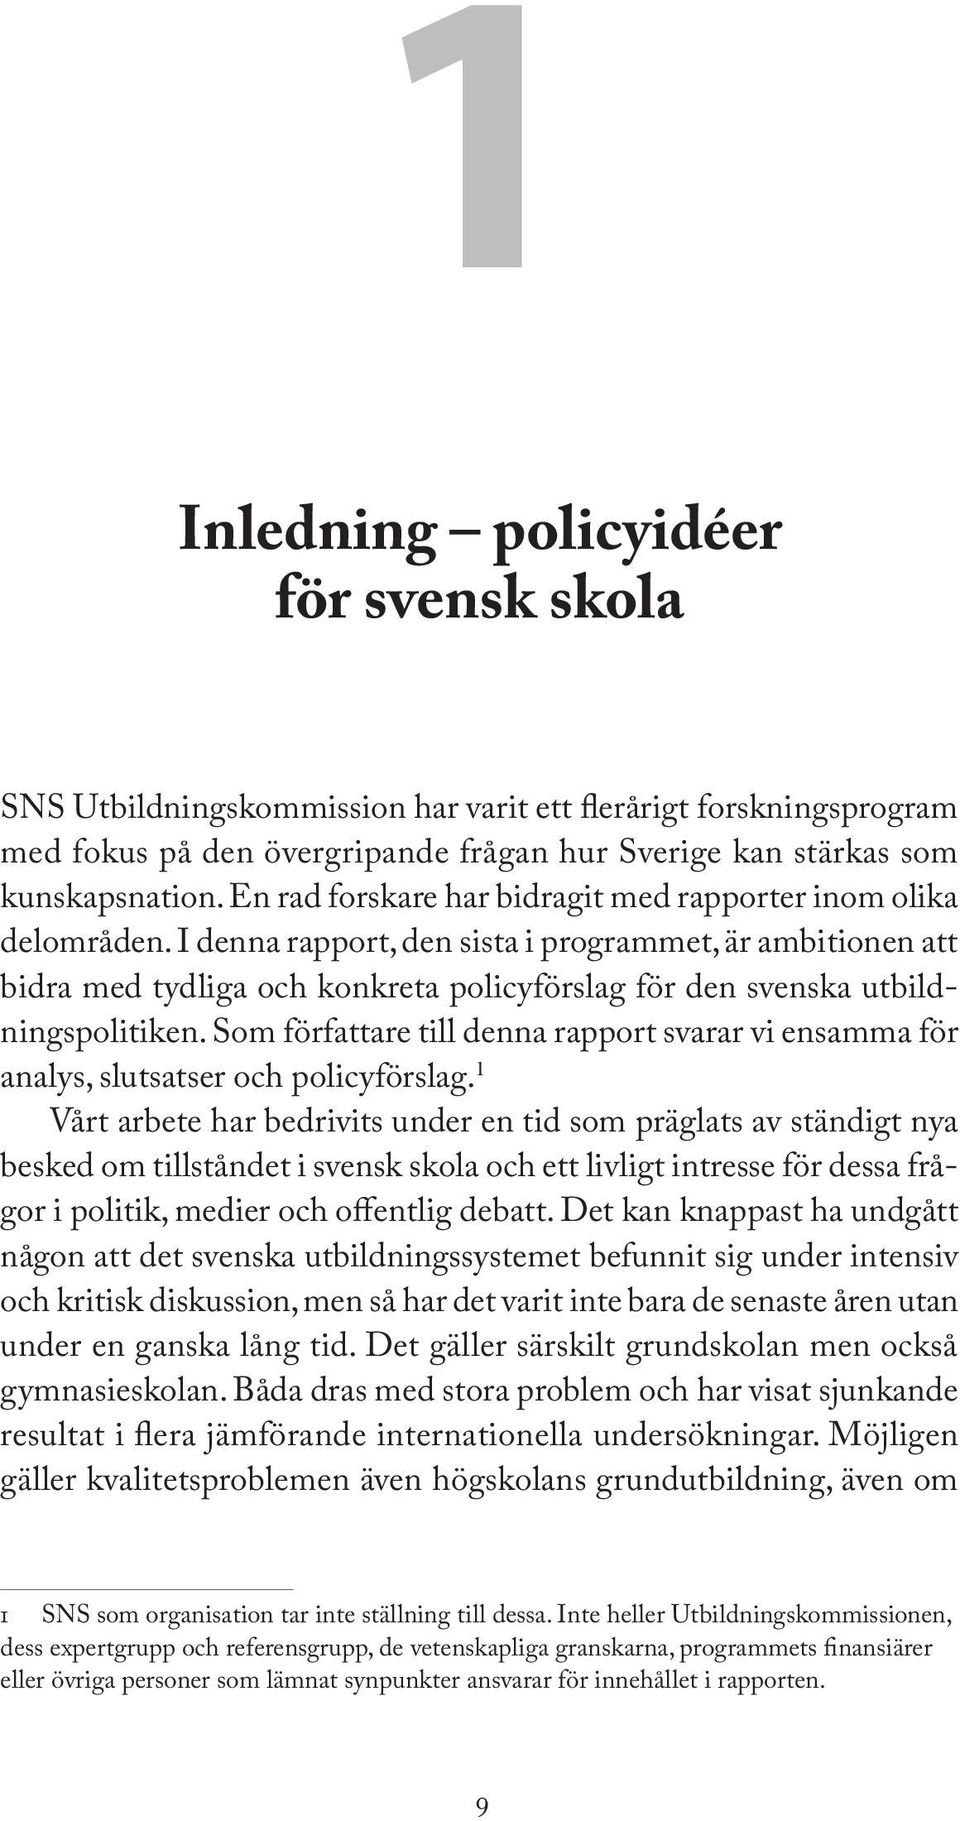 I denna rapport, den sista i programmet, är ambitionen att bidra med tydliga och konkreta policyförslag för den svenska utbildningspolitiken.